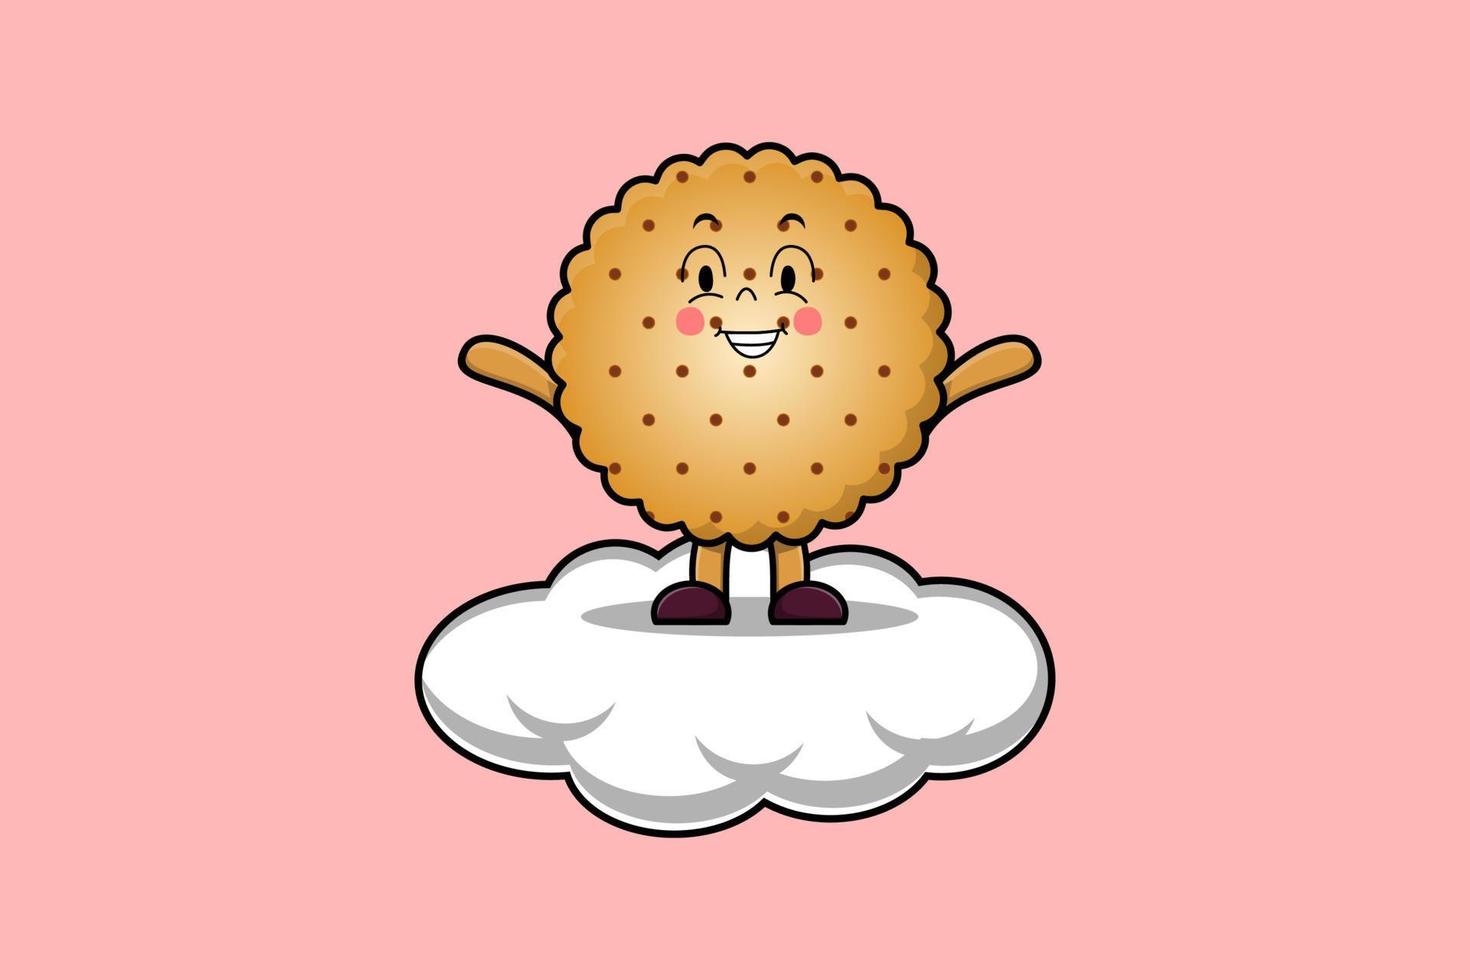 personagem de biscoitos de desenho animado bonito em pé na nuvem vetor